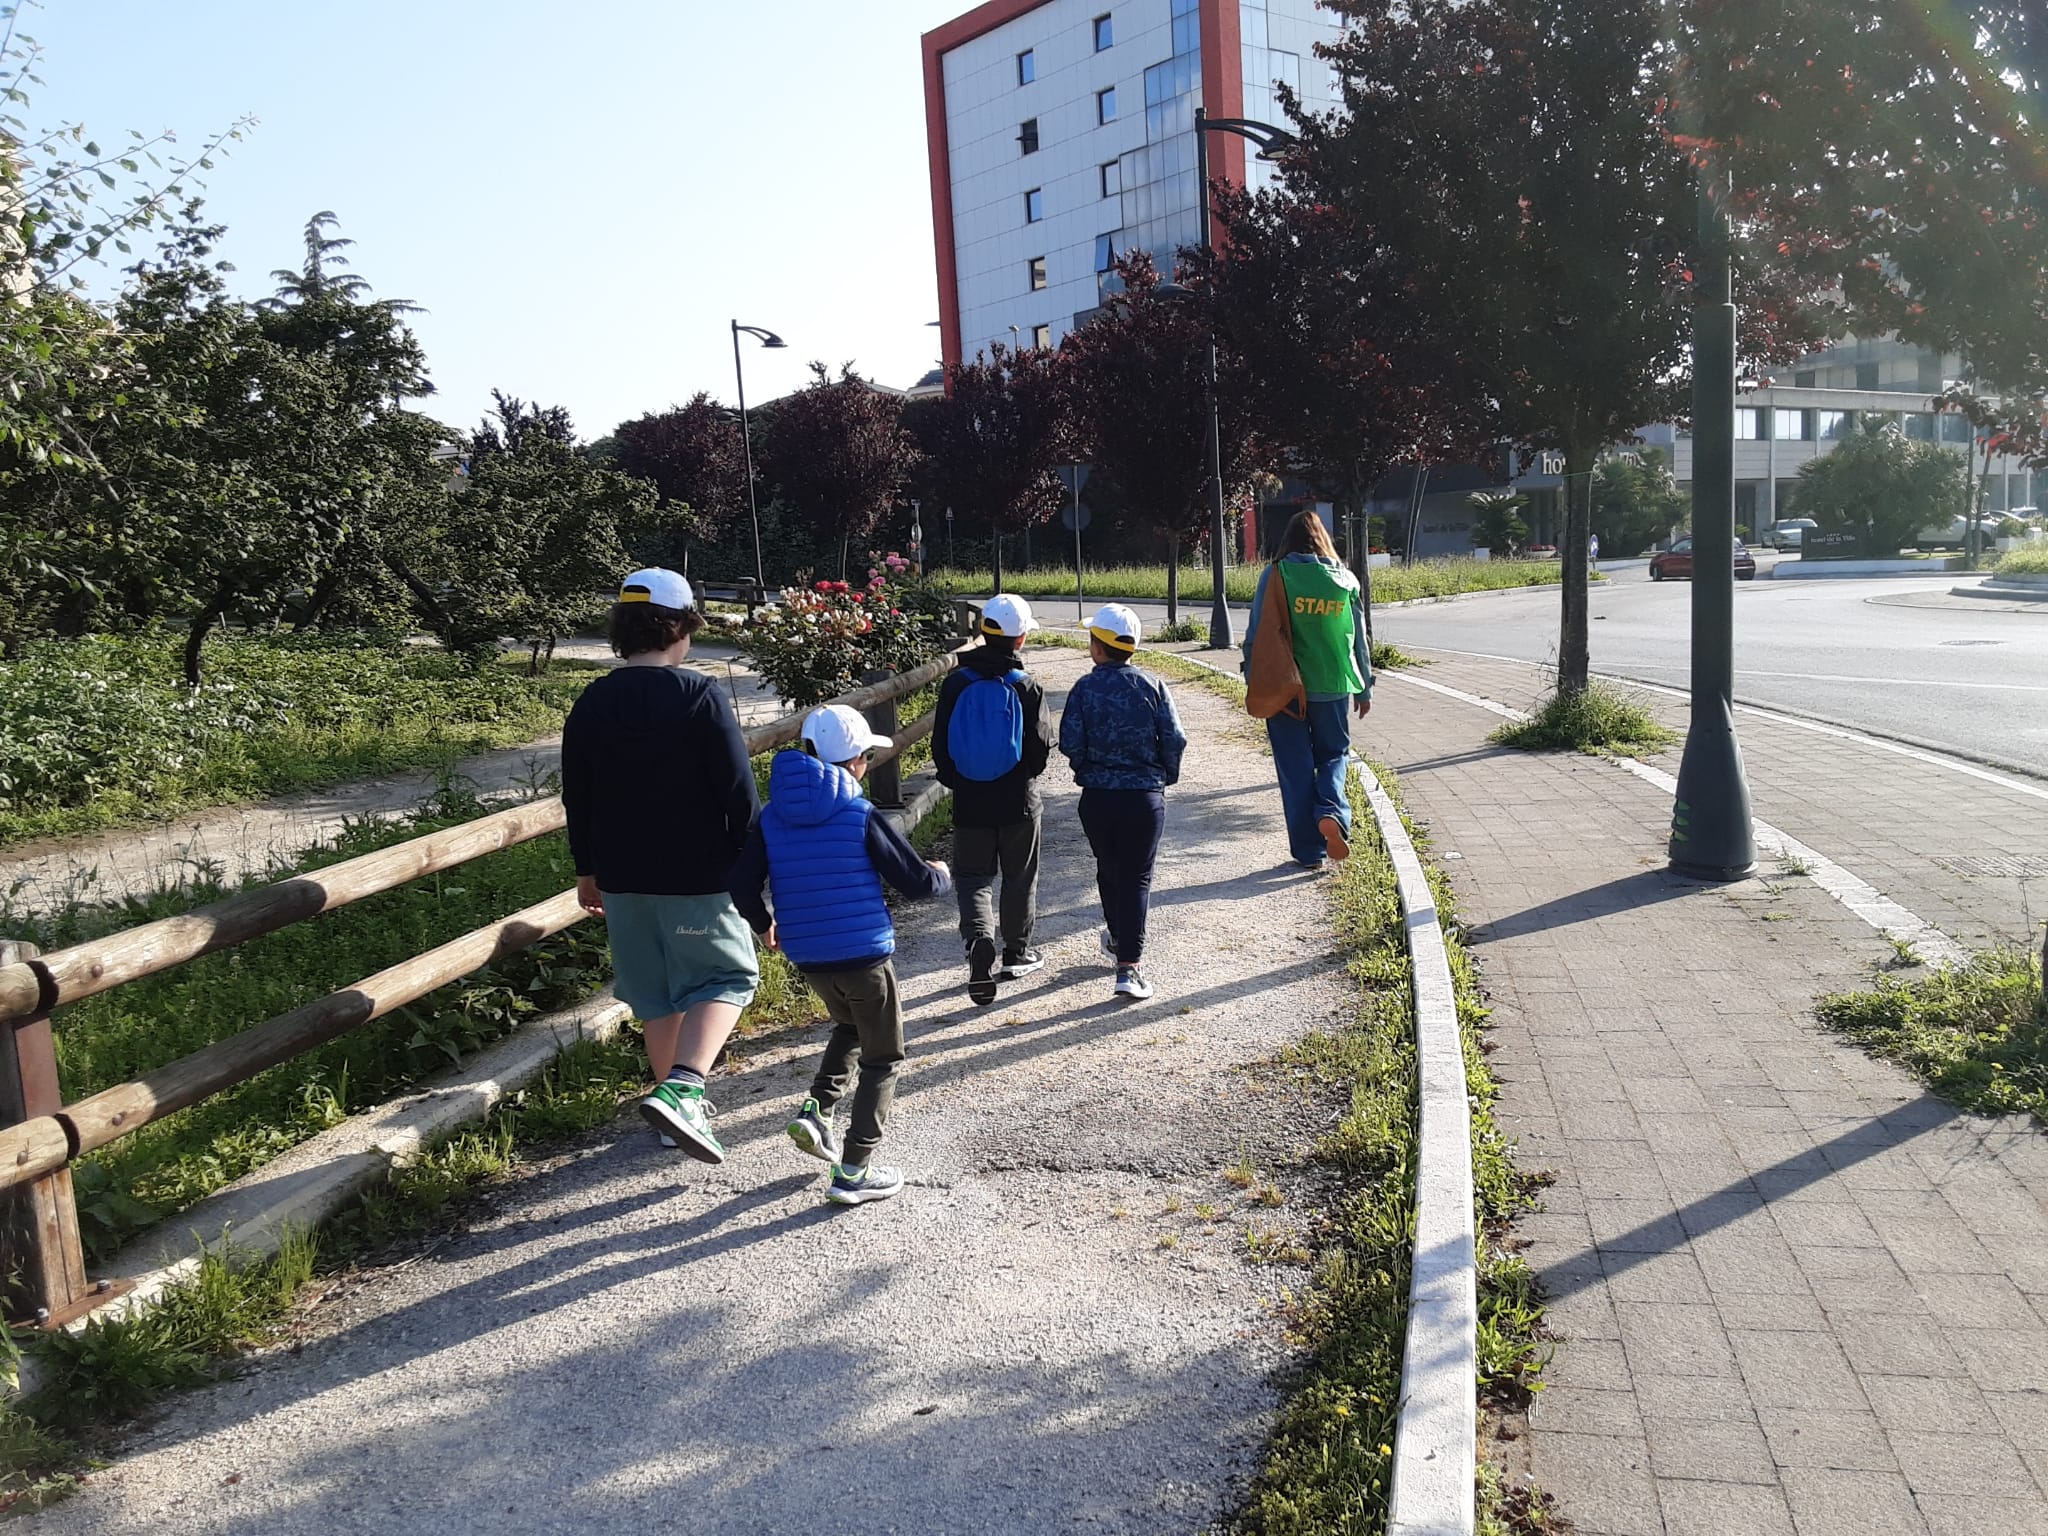 Avellino| Pedibus, il progetto di mobilità alternativa della Uisp convince alunni, genitori e docenti